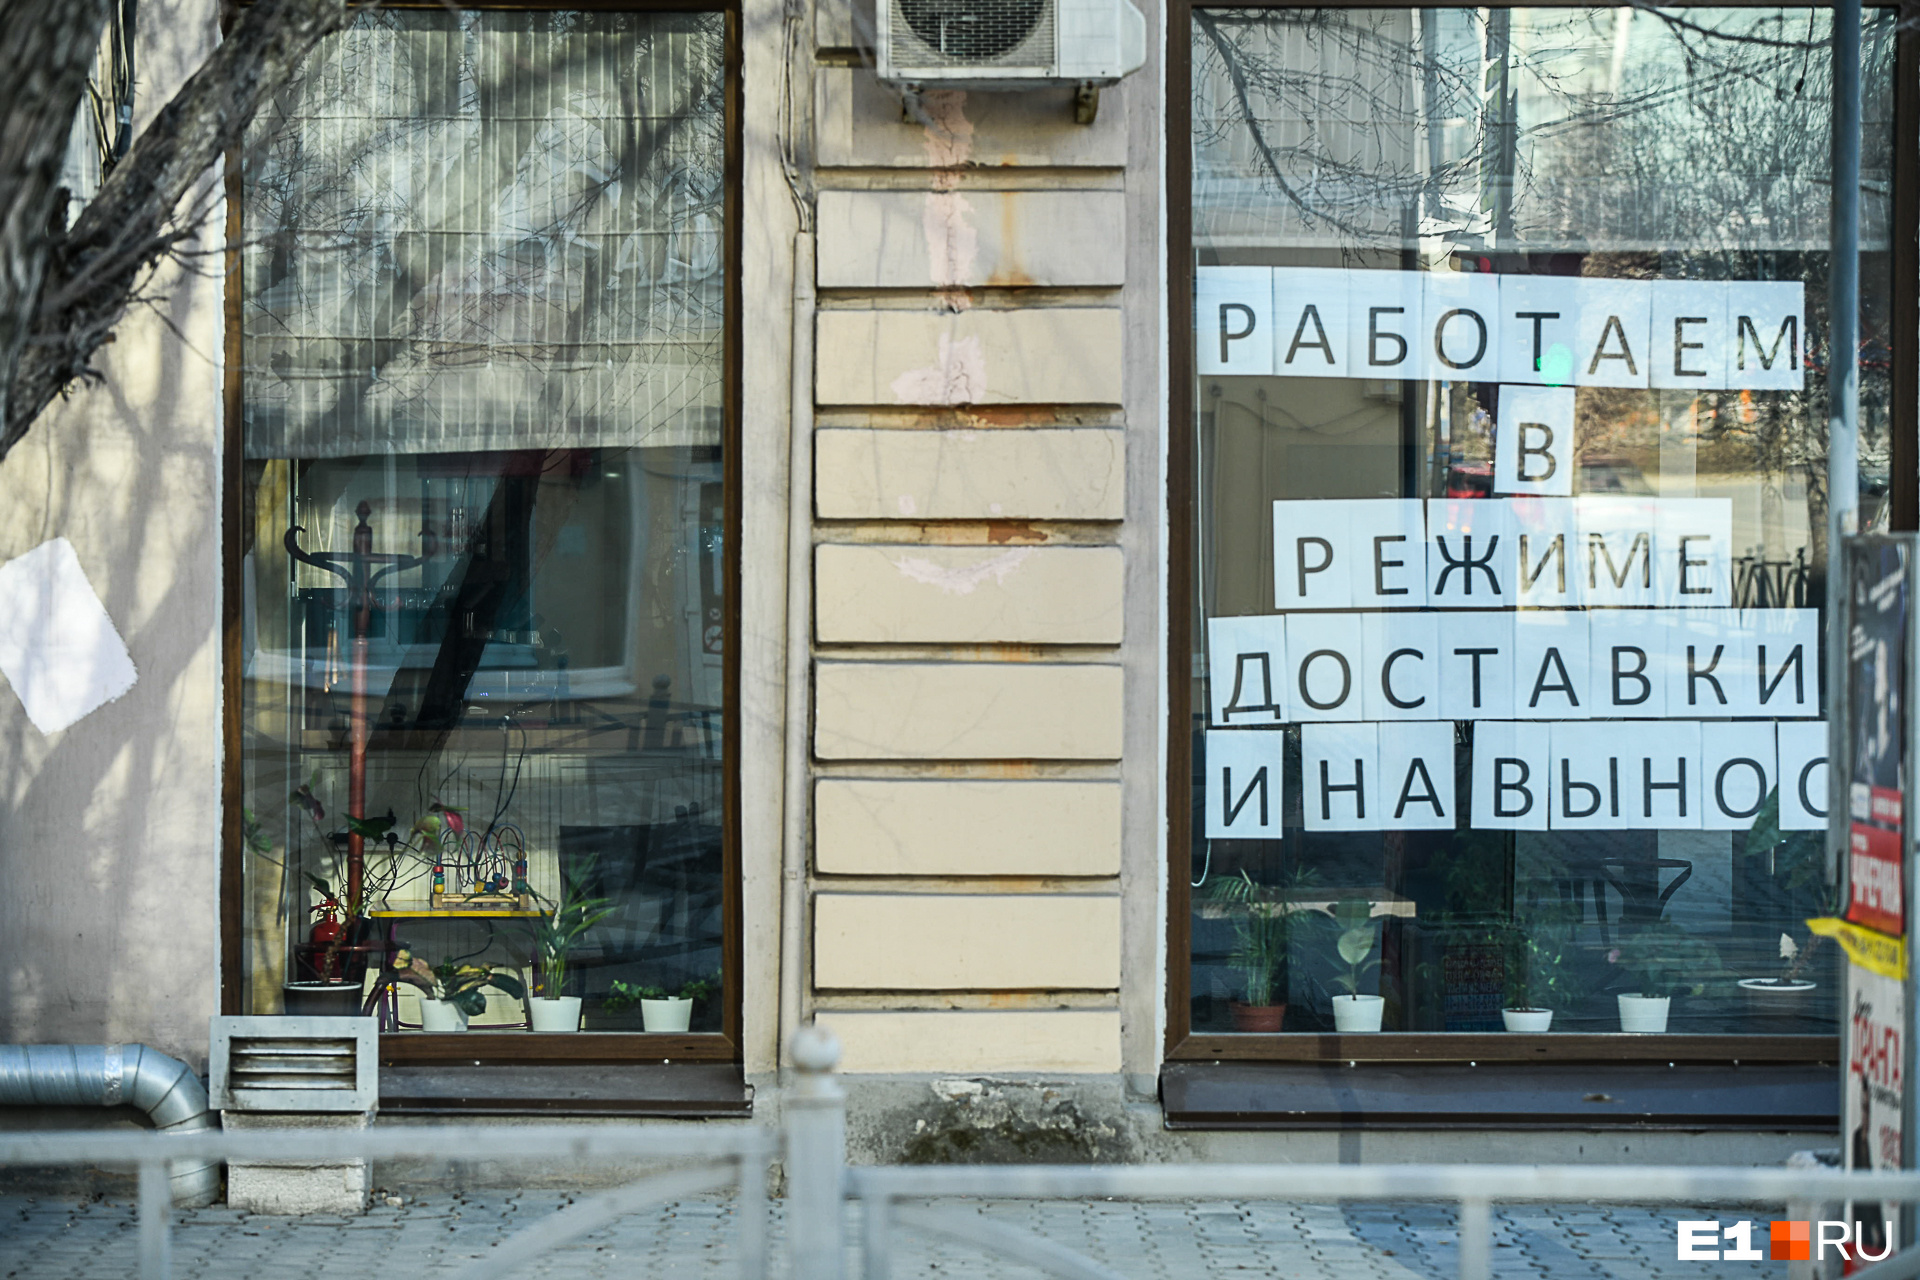 Все рестораны, бары и кафе в Екатеринбурге закрылись и не принимают гостей